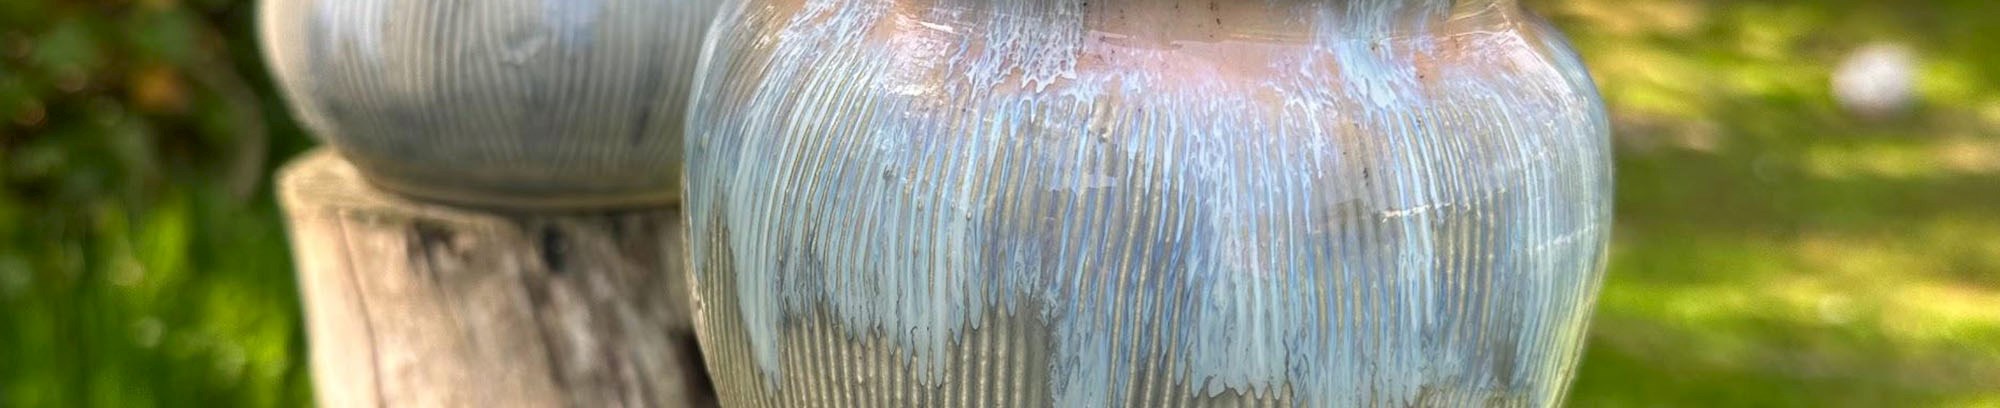 foto af keramik i blå og grå - 2 skåle på en træstub